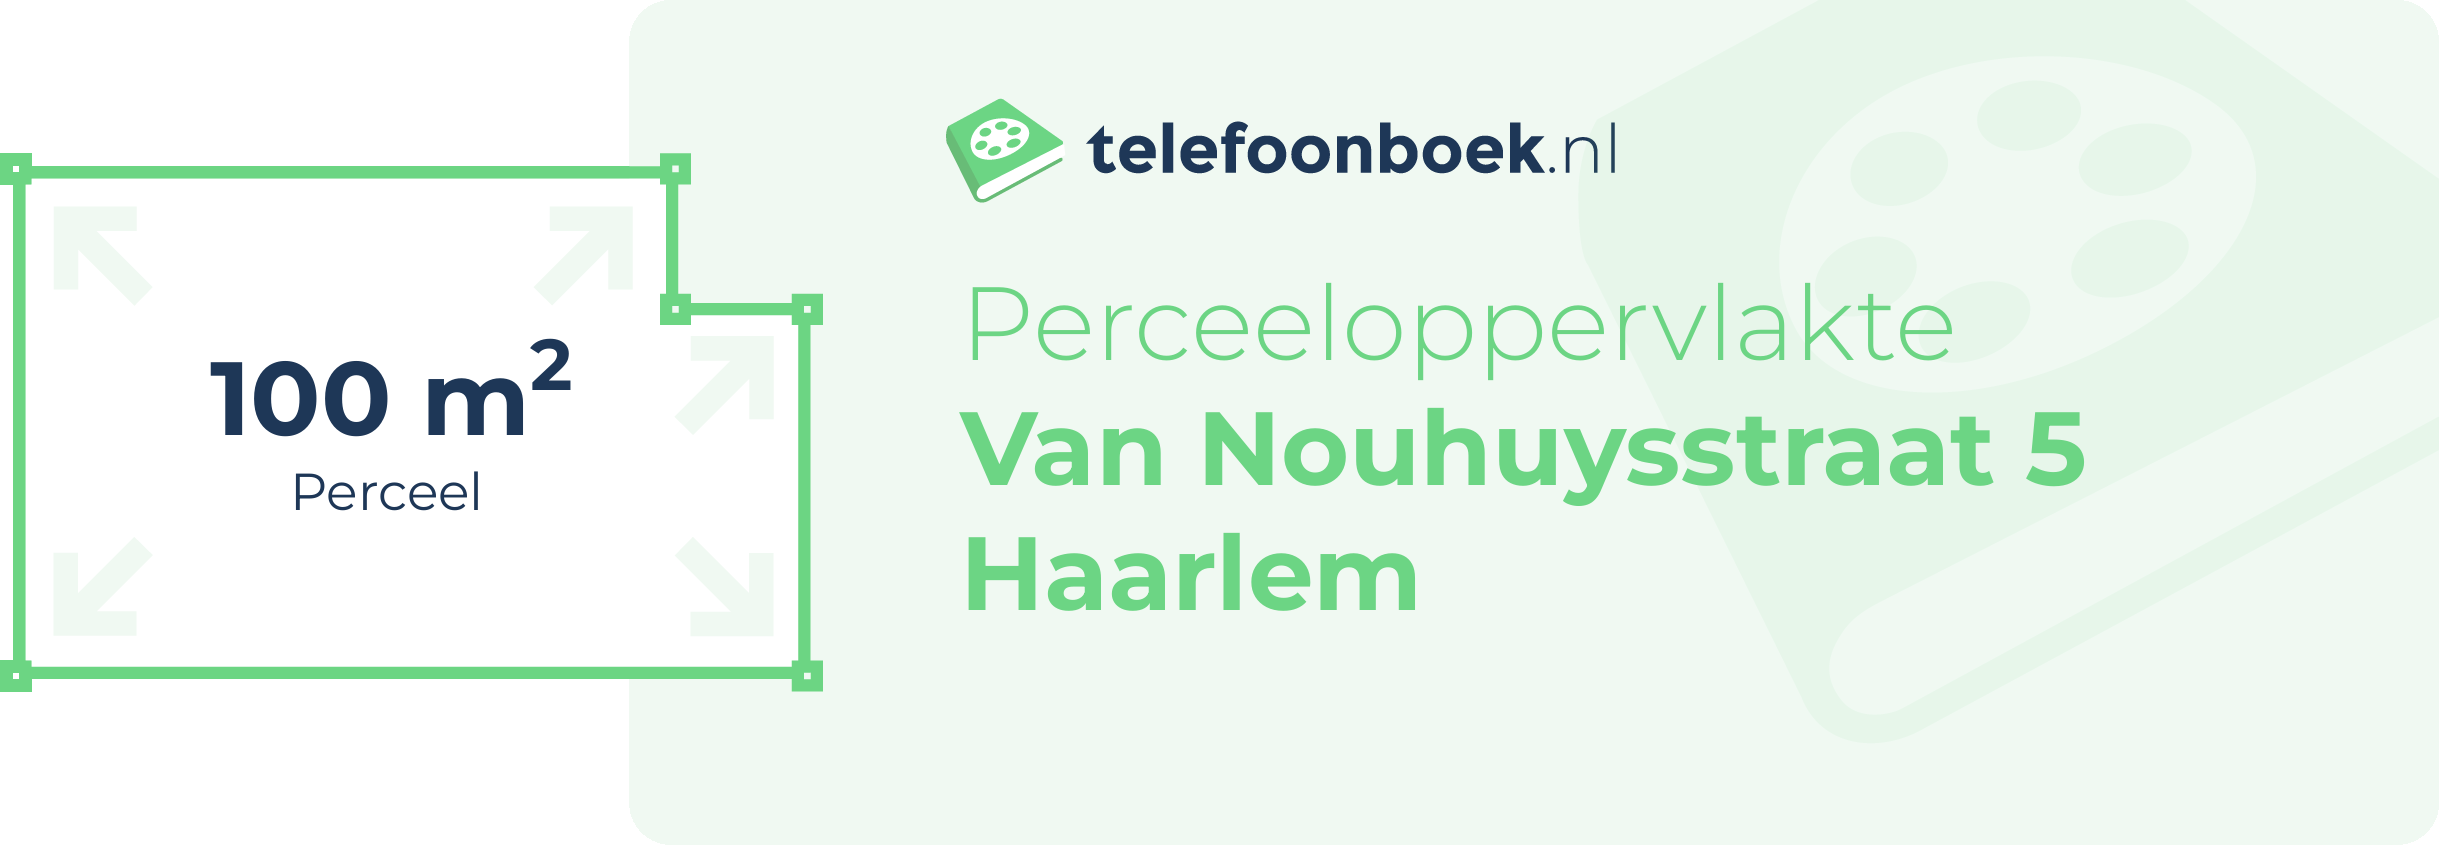 Perceeloppervlakte Van Nouhuysstraat 5 Haarlem